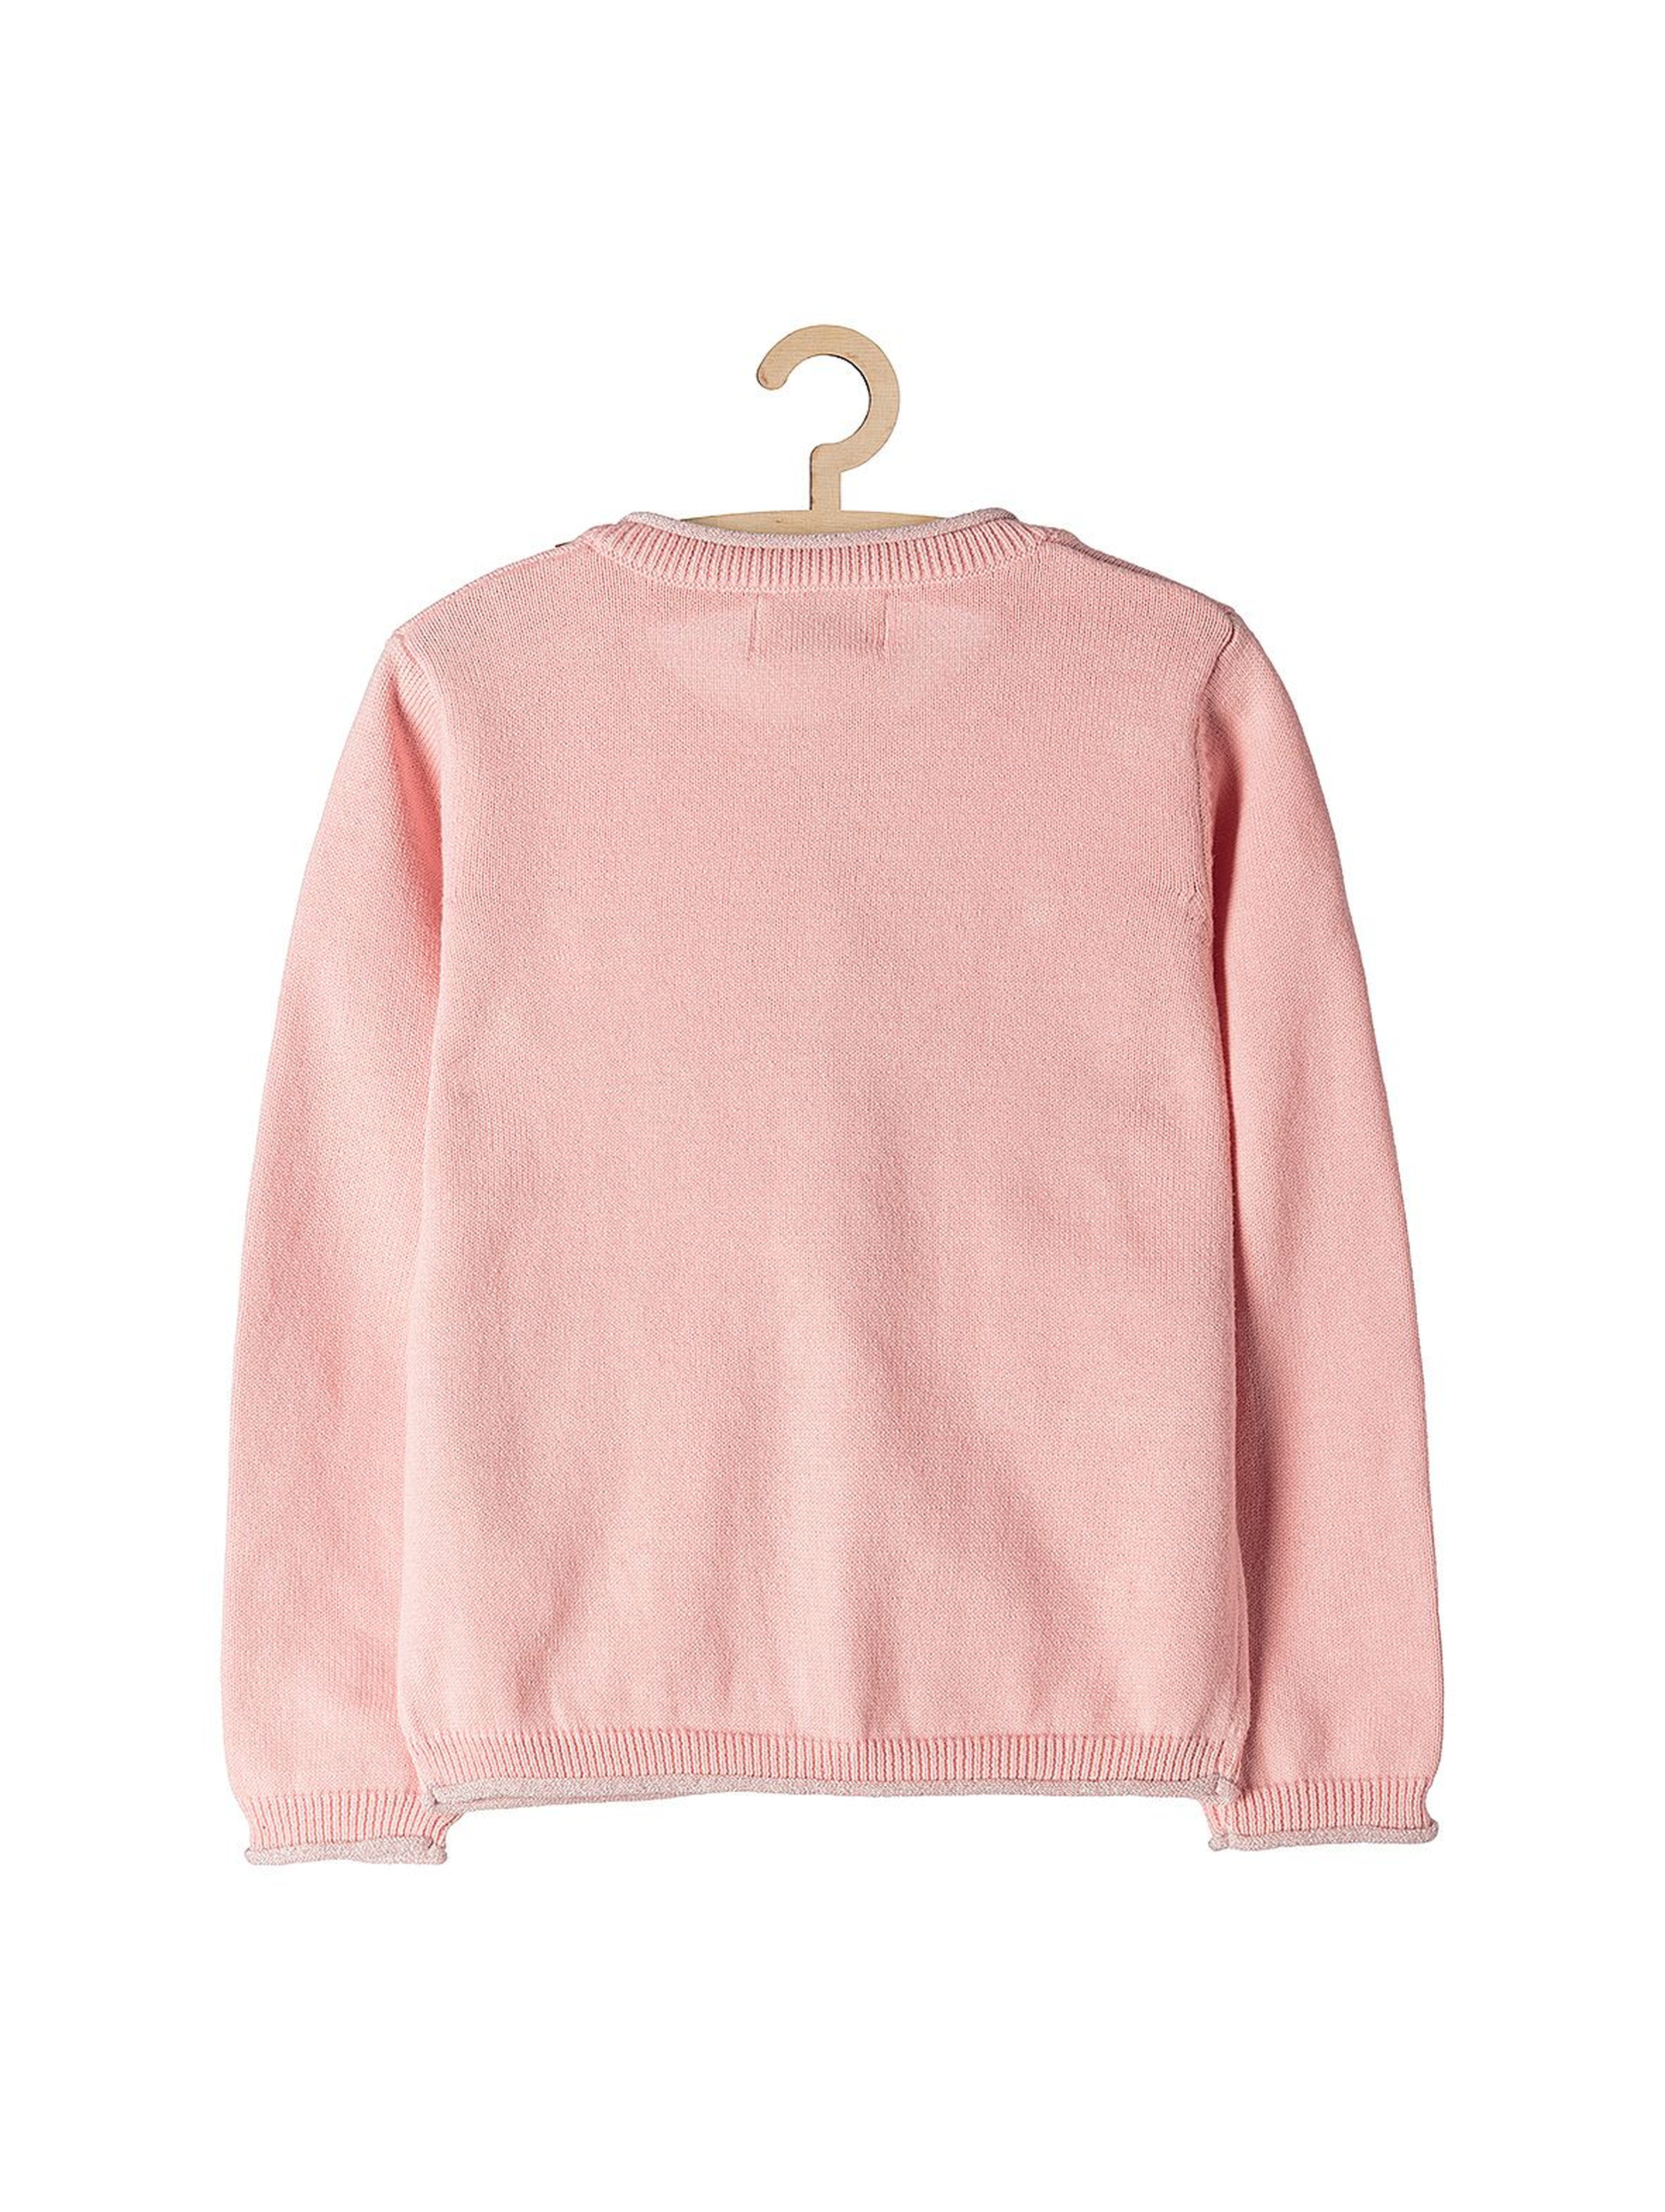 Sweter dziewczęcy różowy z połyskującymi detalami